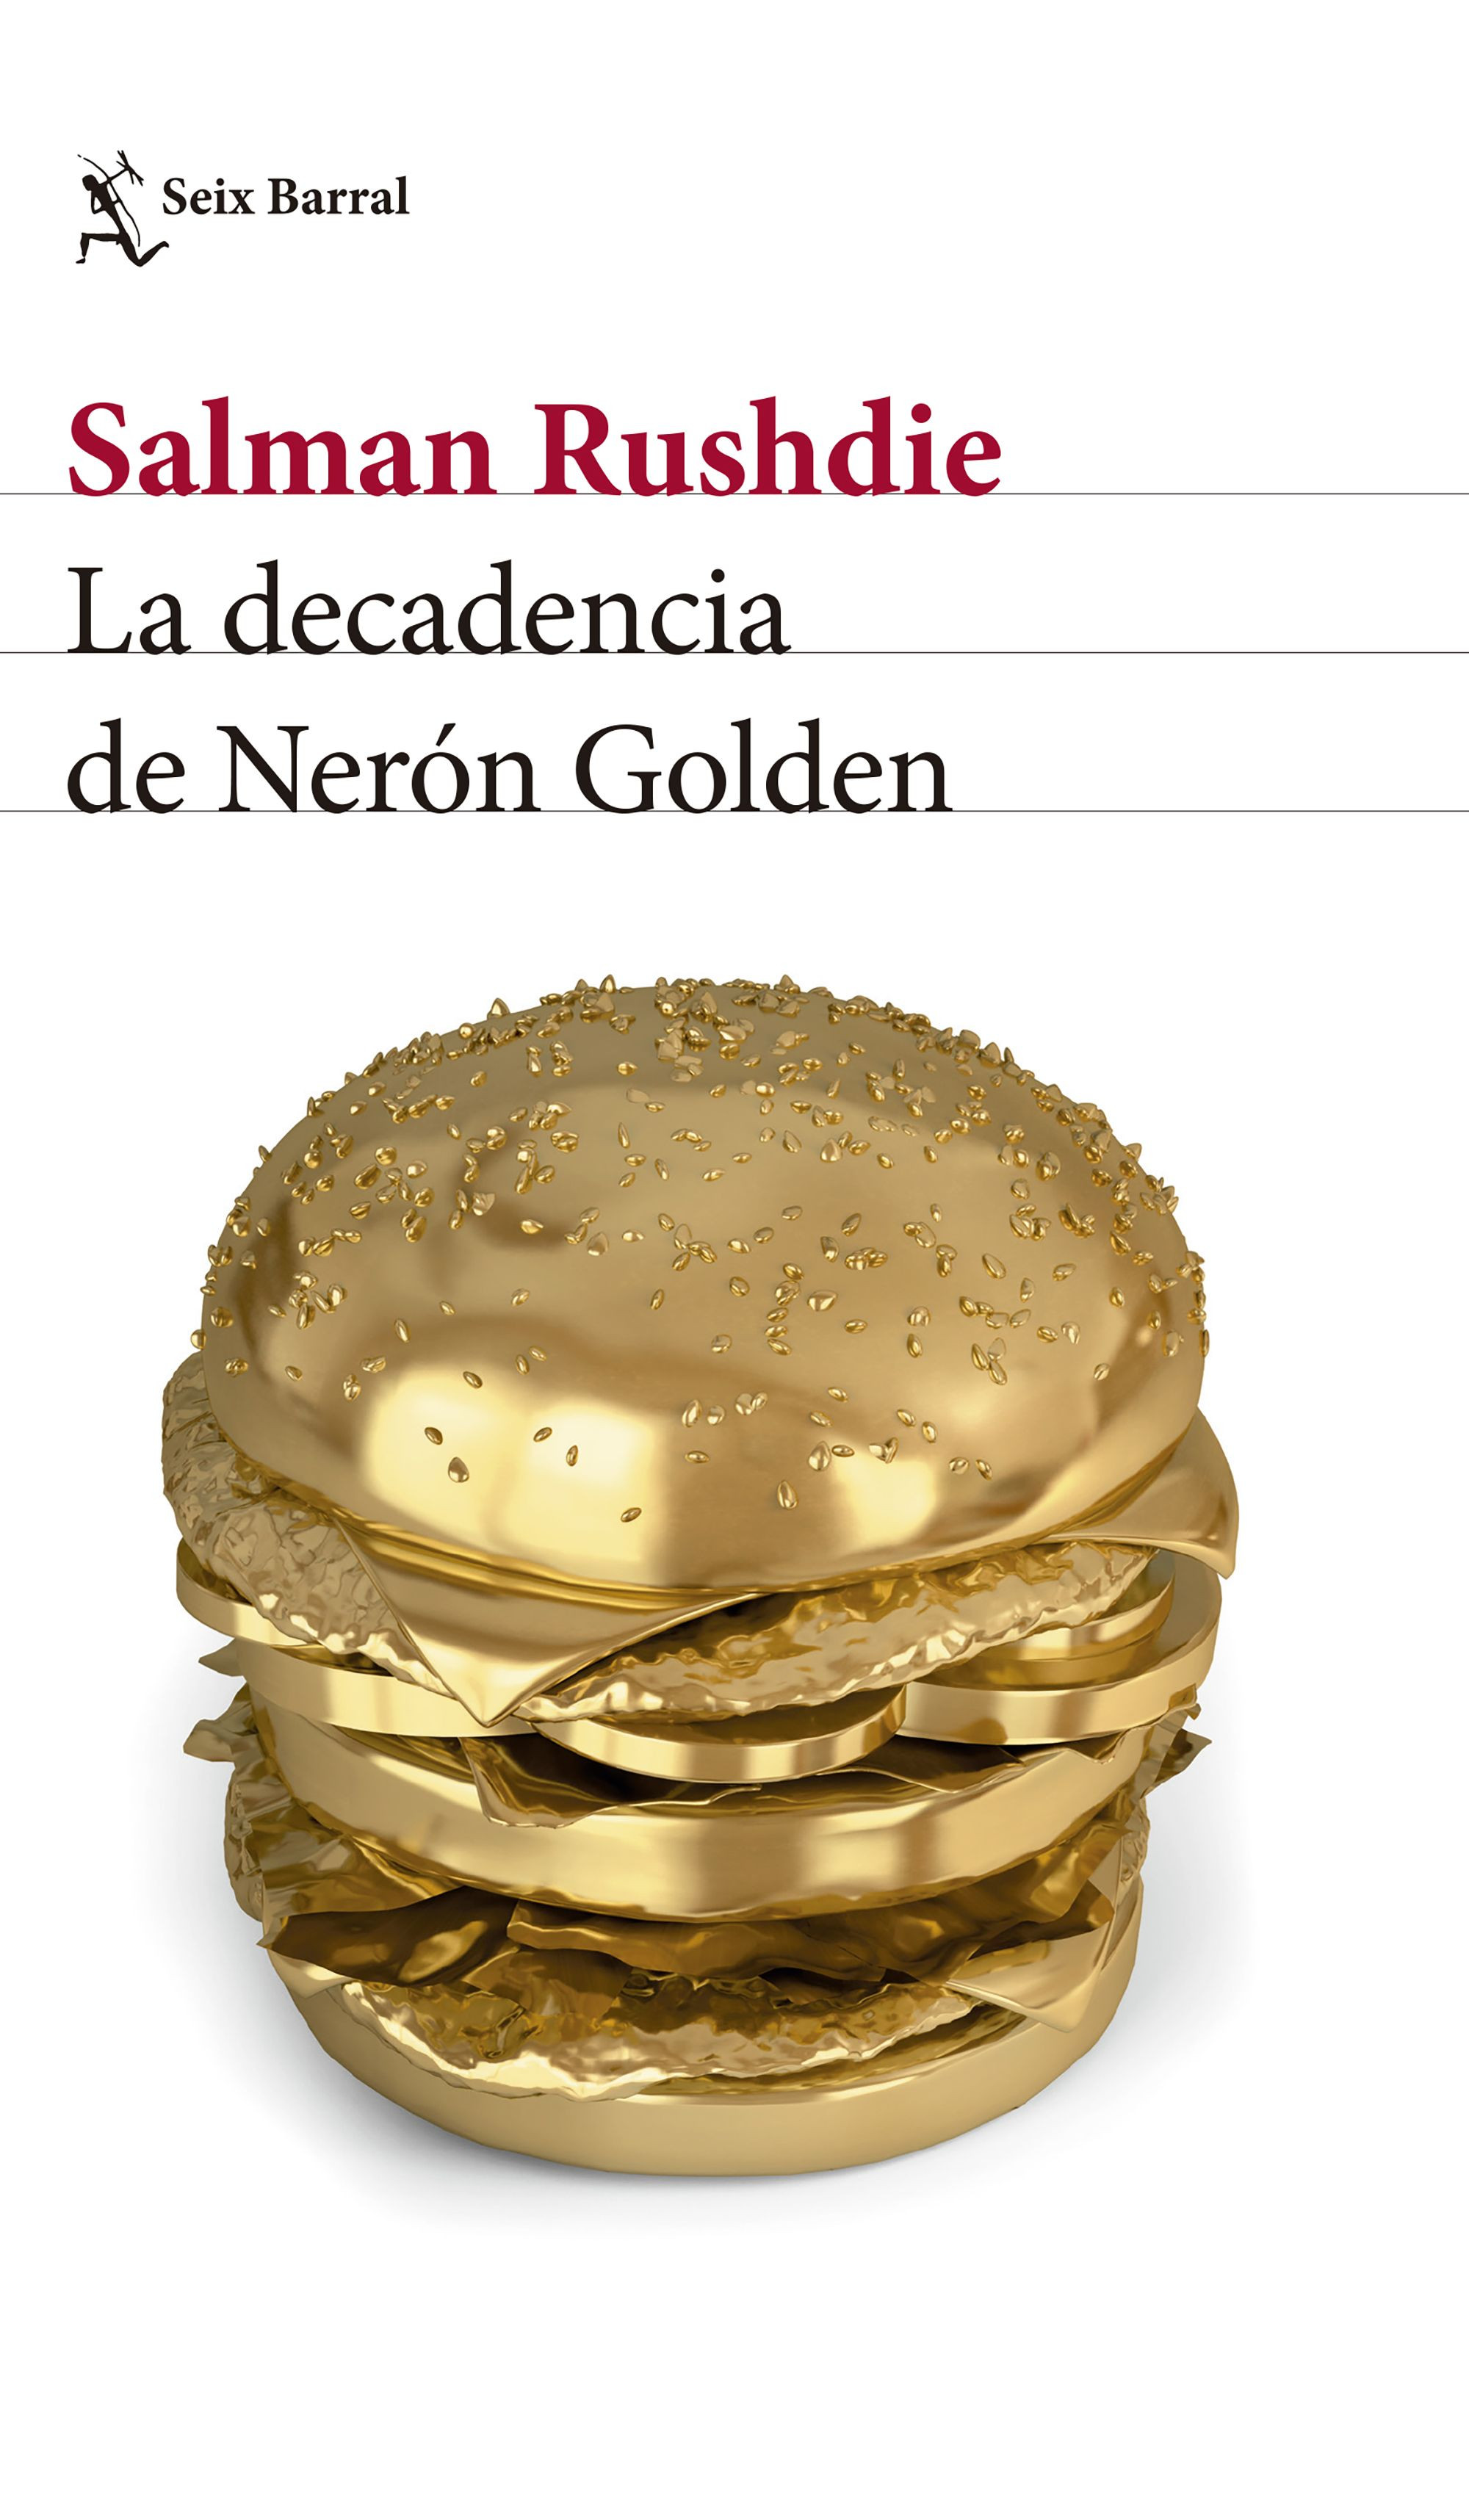 Imagen La decadencia de Nerón Golden/ Salman Rushdie 1